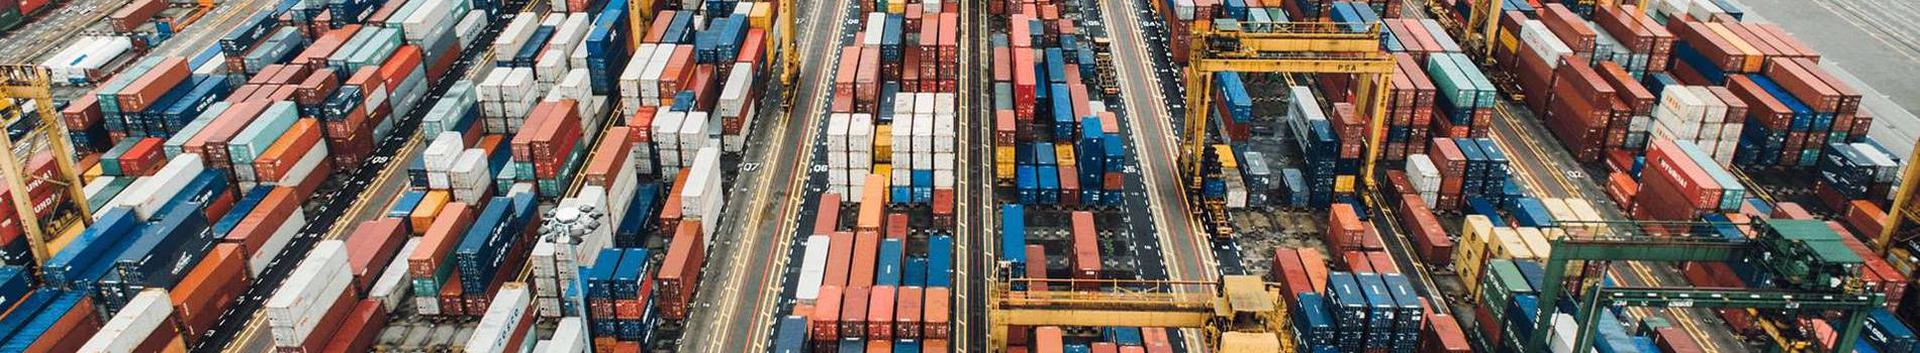 laevandus, transpordi- ja kullerteenused, Rahvusvahelised kaubaveod, Rahvusvaheline transport